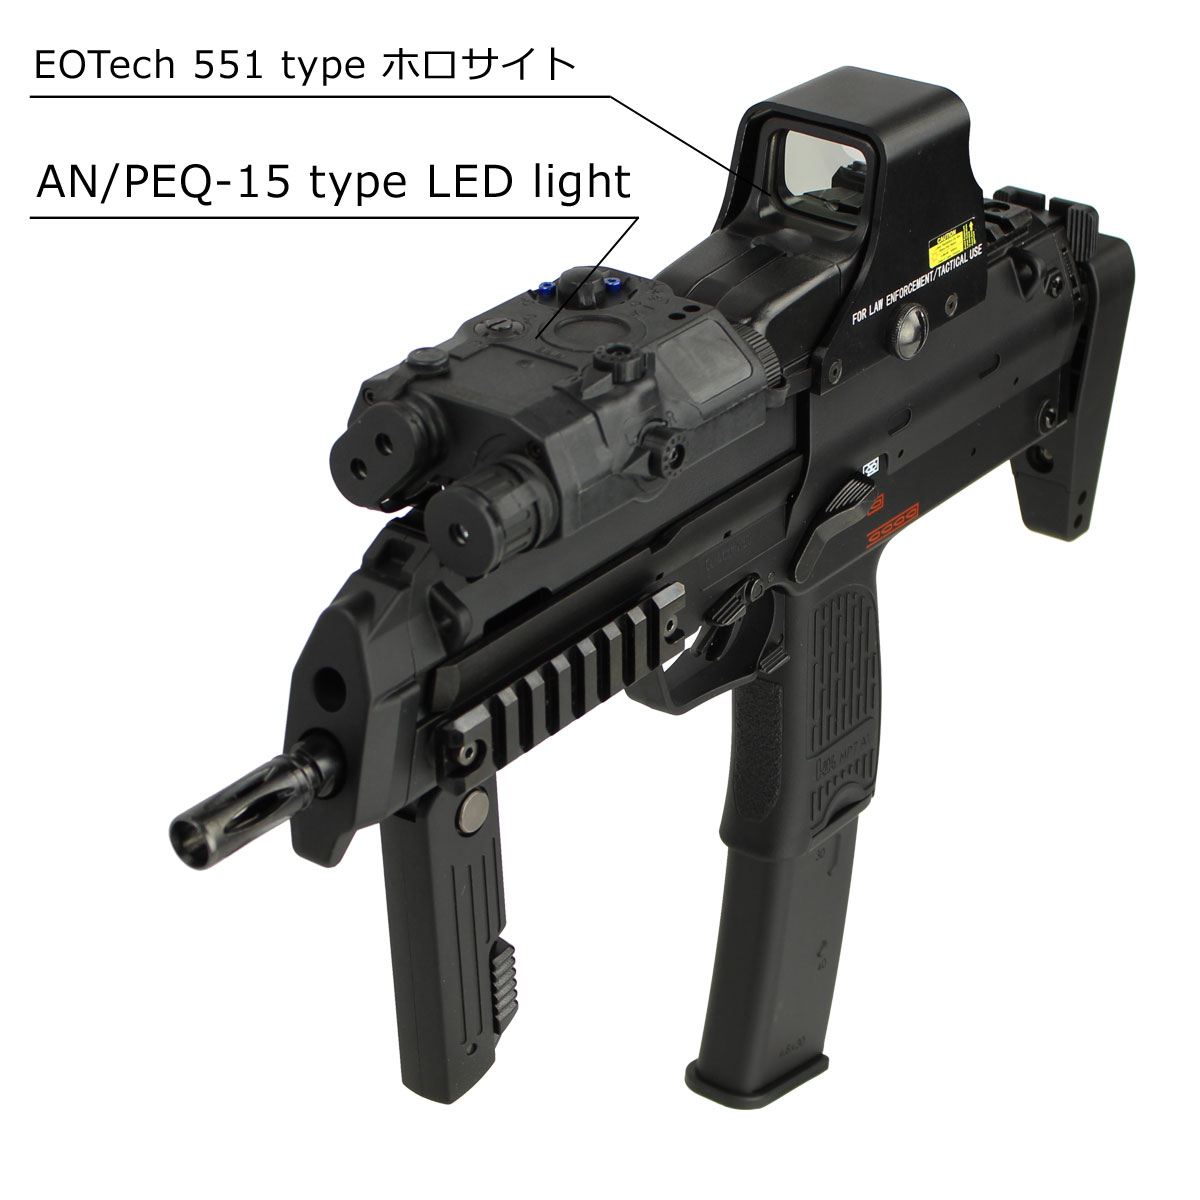 東京マルイ MP7A1 電動コンパクトマシンガン 付属品多数 極上美品-